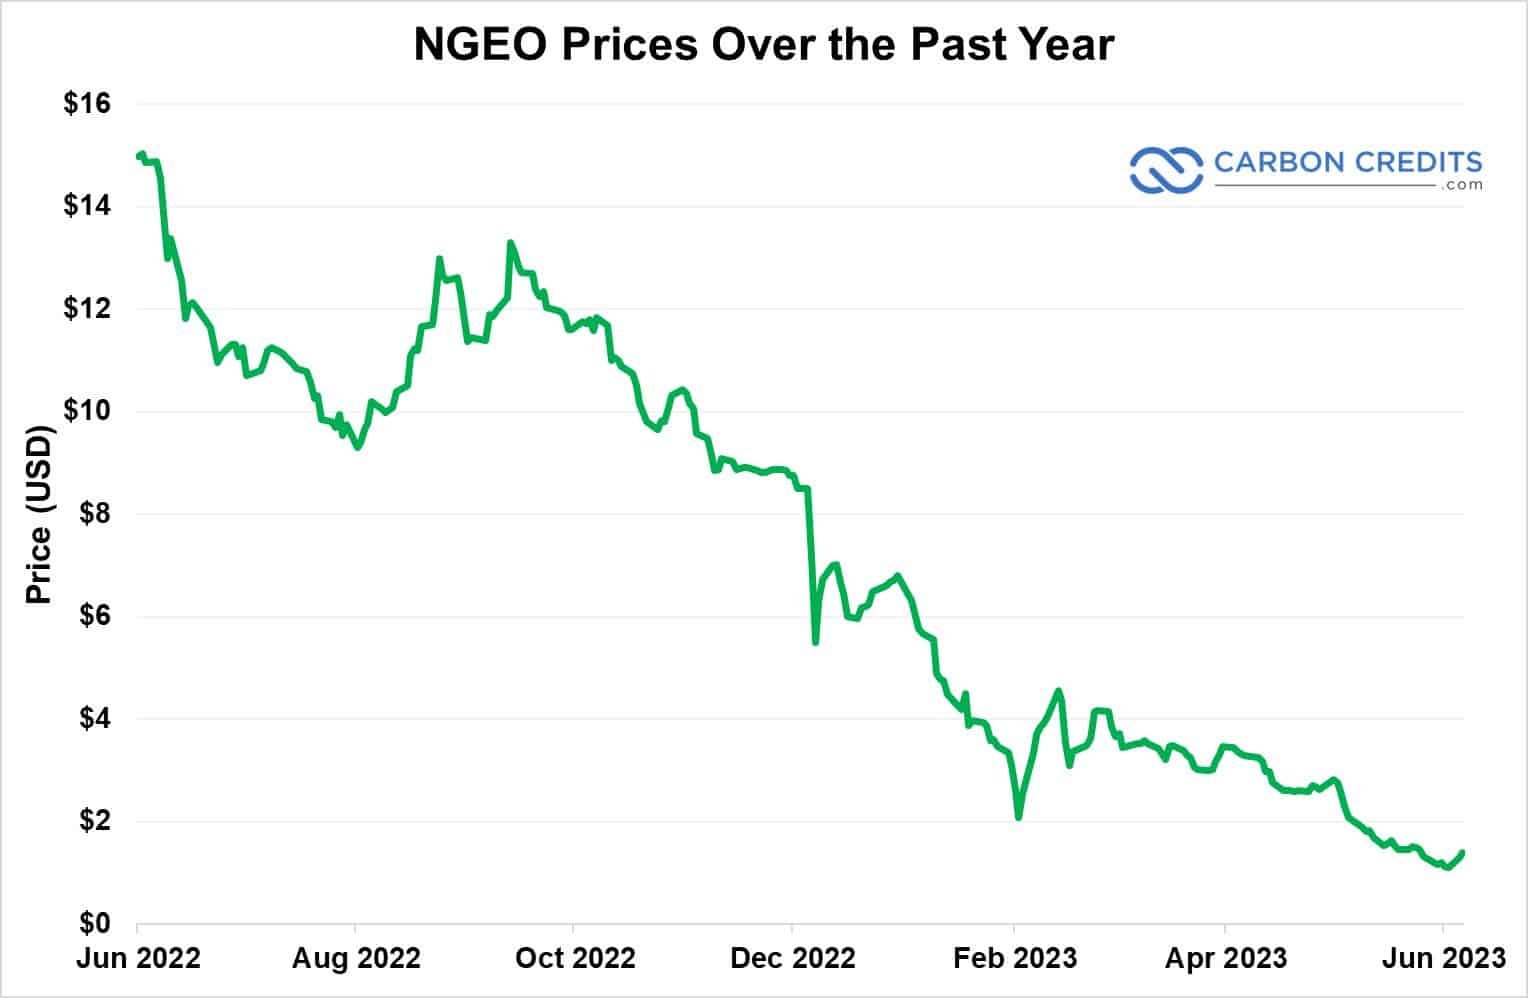 NGEO prices falling 2022-2023